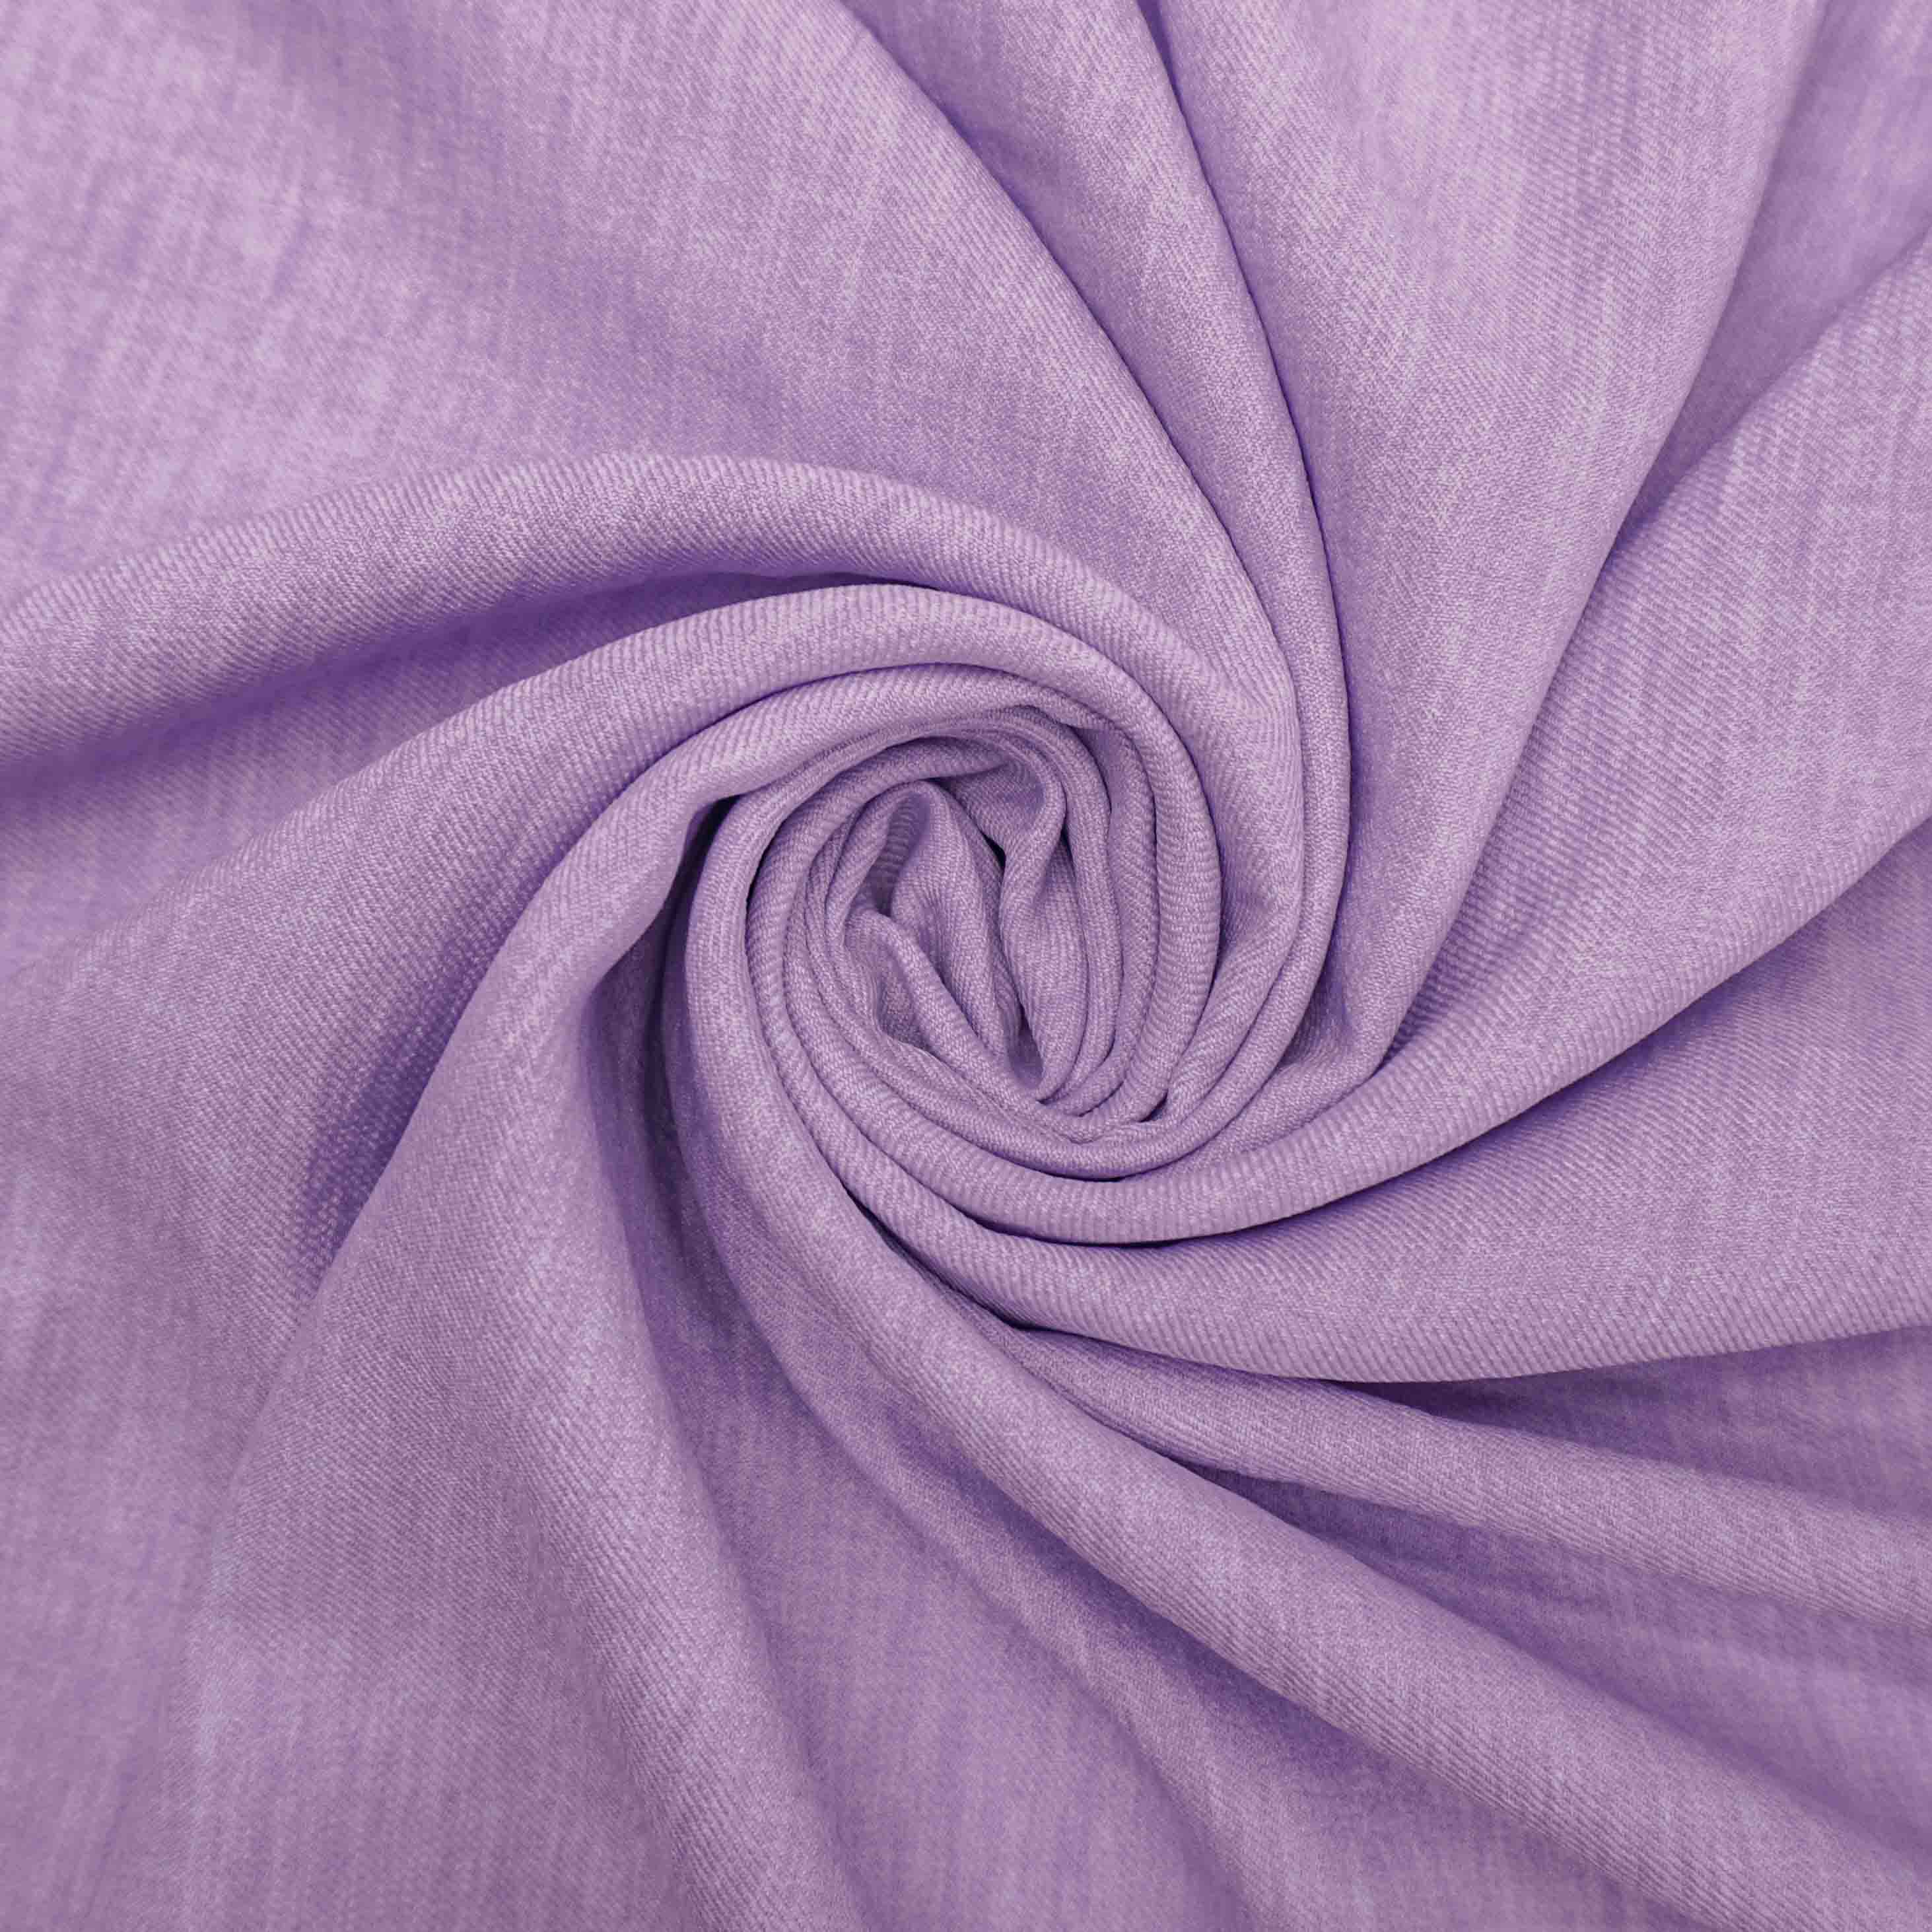 Tecido alfaiataria com textura de linho lilás